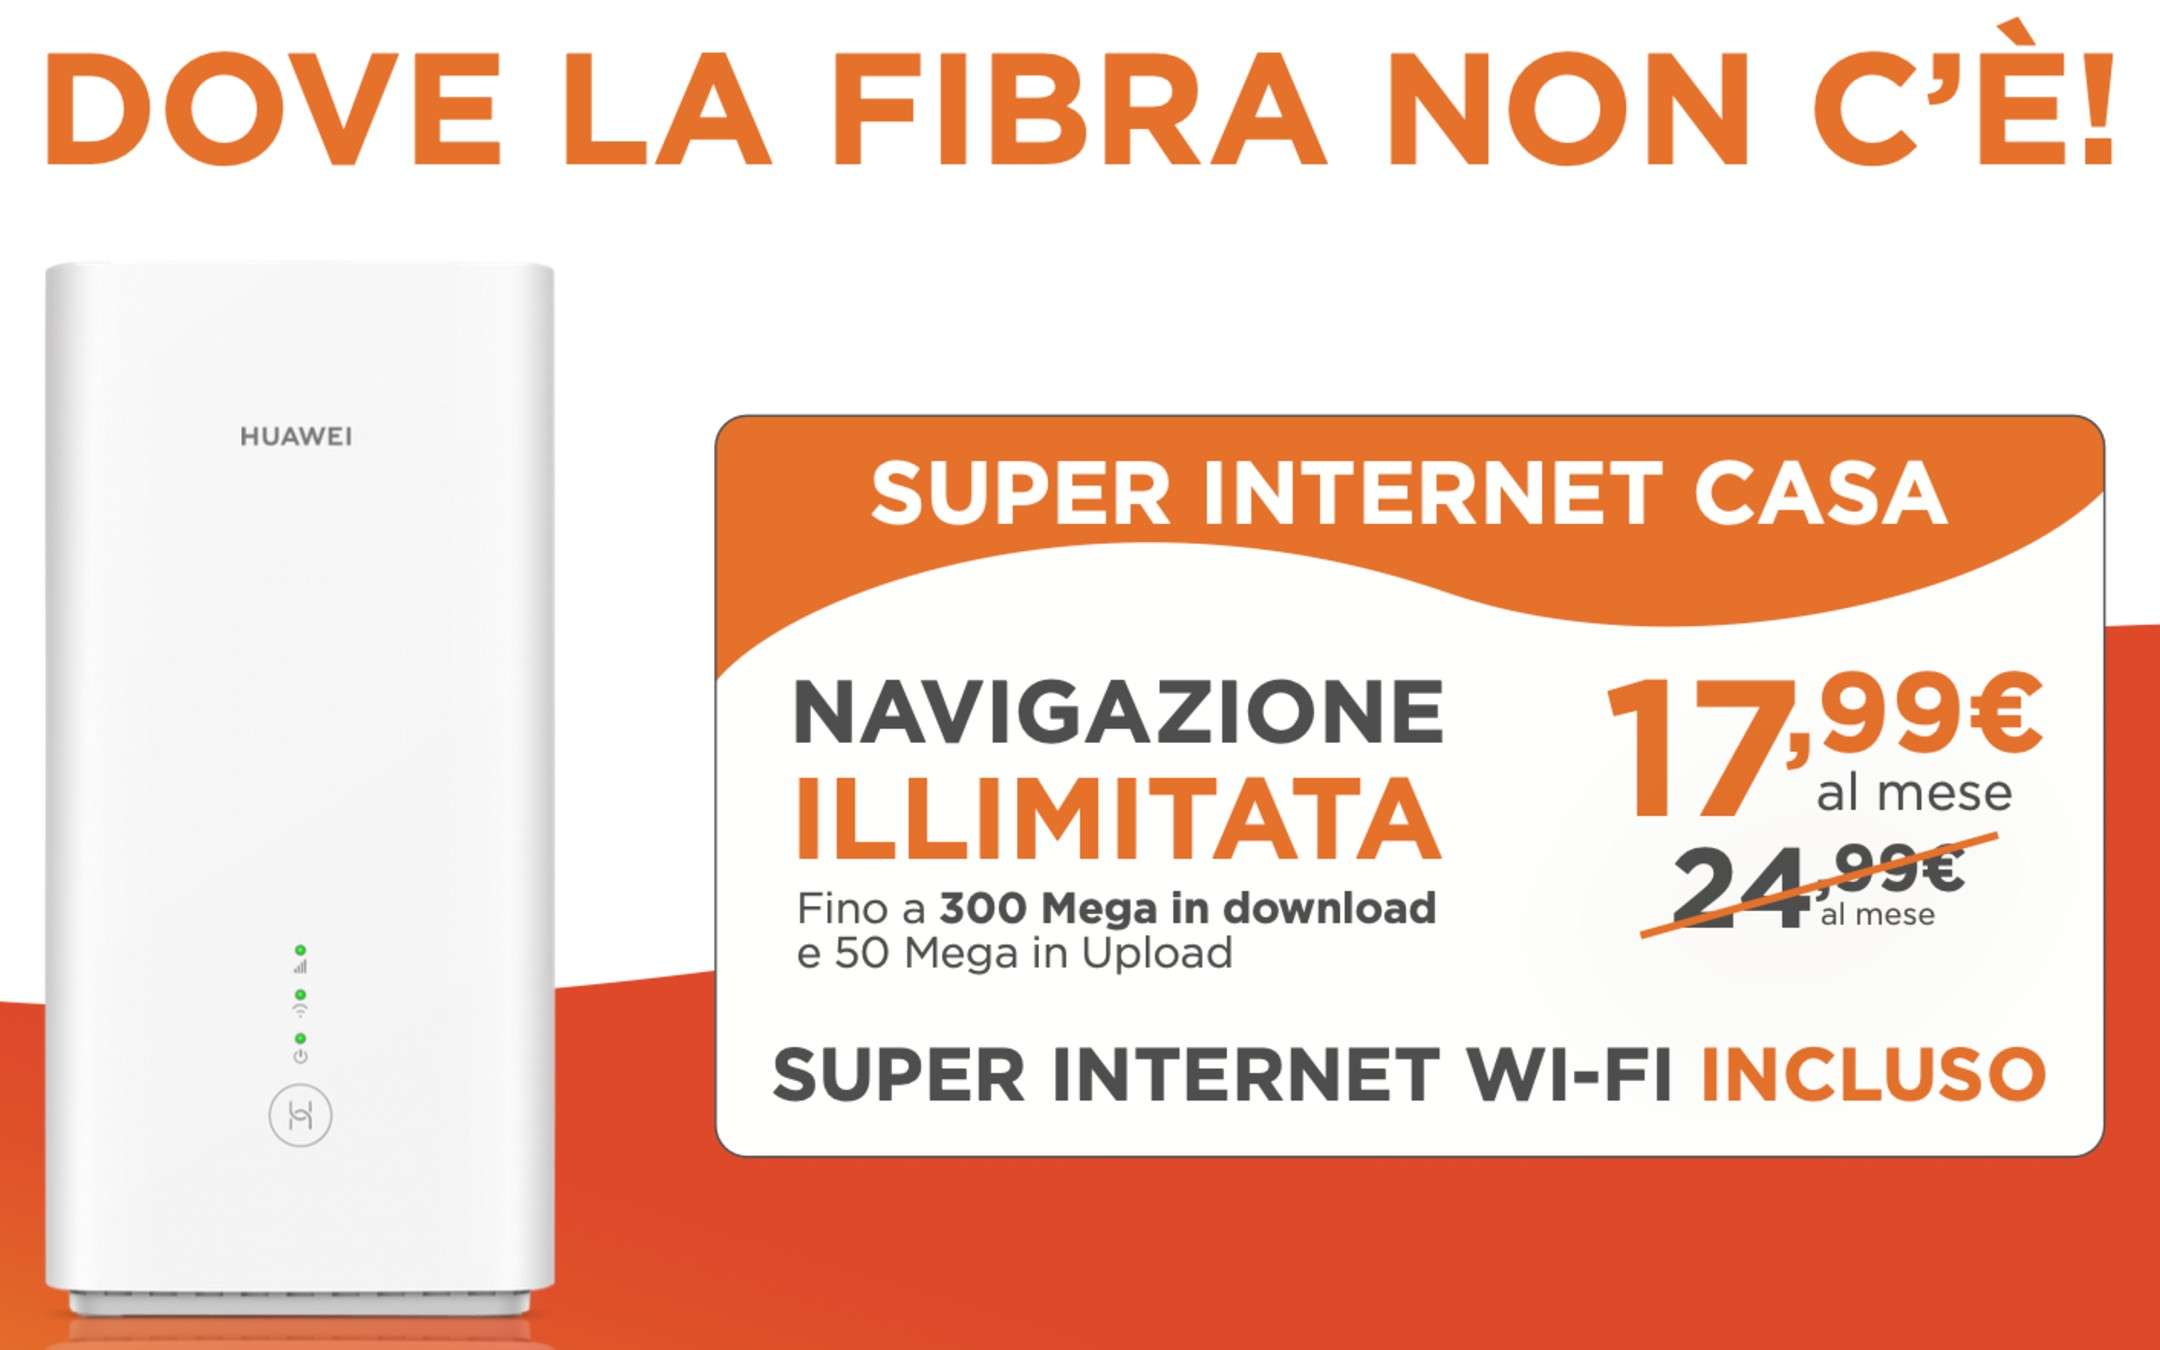 Super Internet Casa: FWA di WINDTRE a soli 17,99€